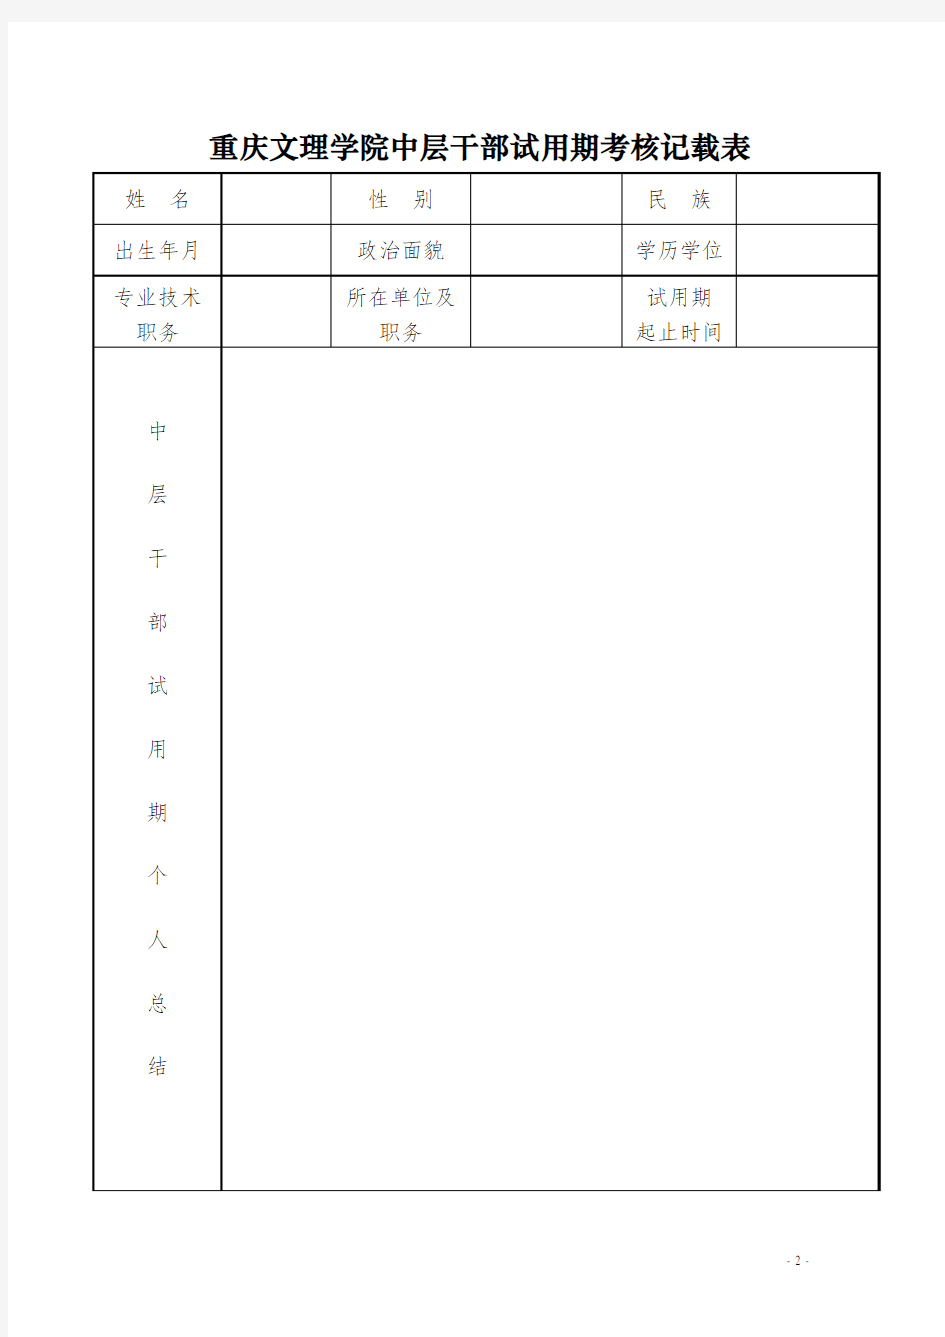 重庆文理学院中层干部试用期考核记载表